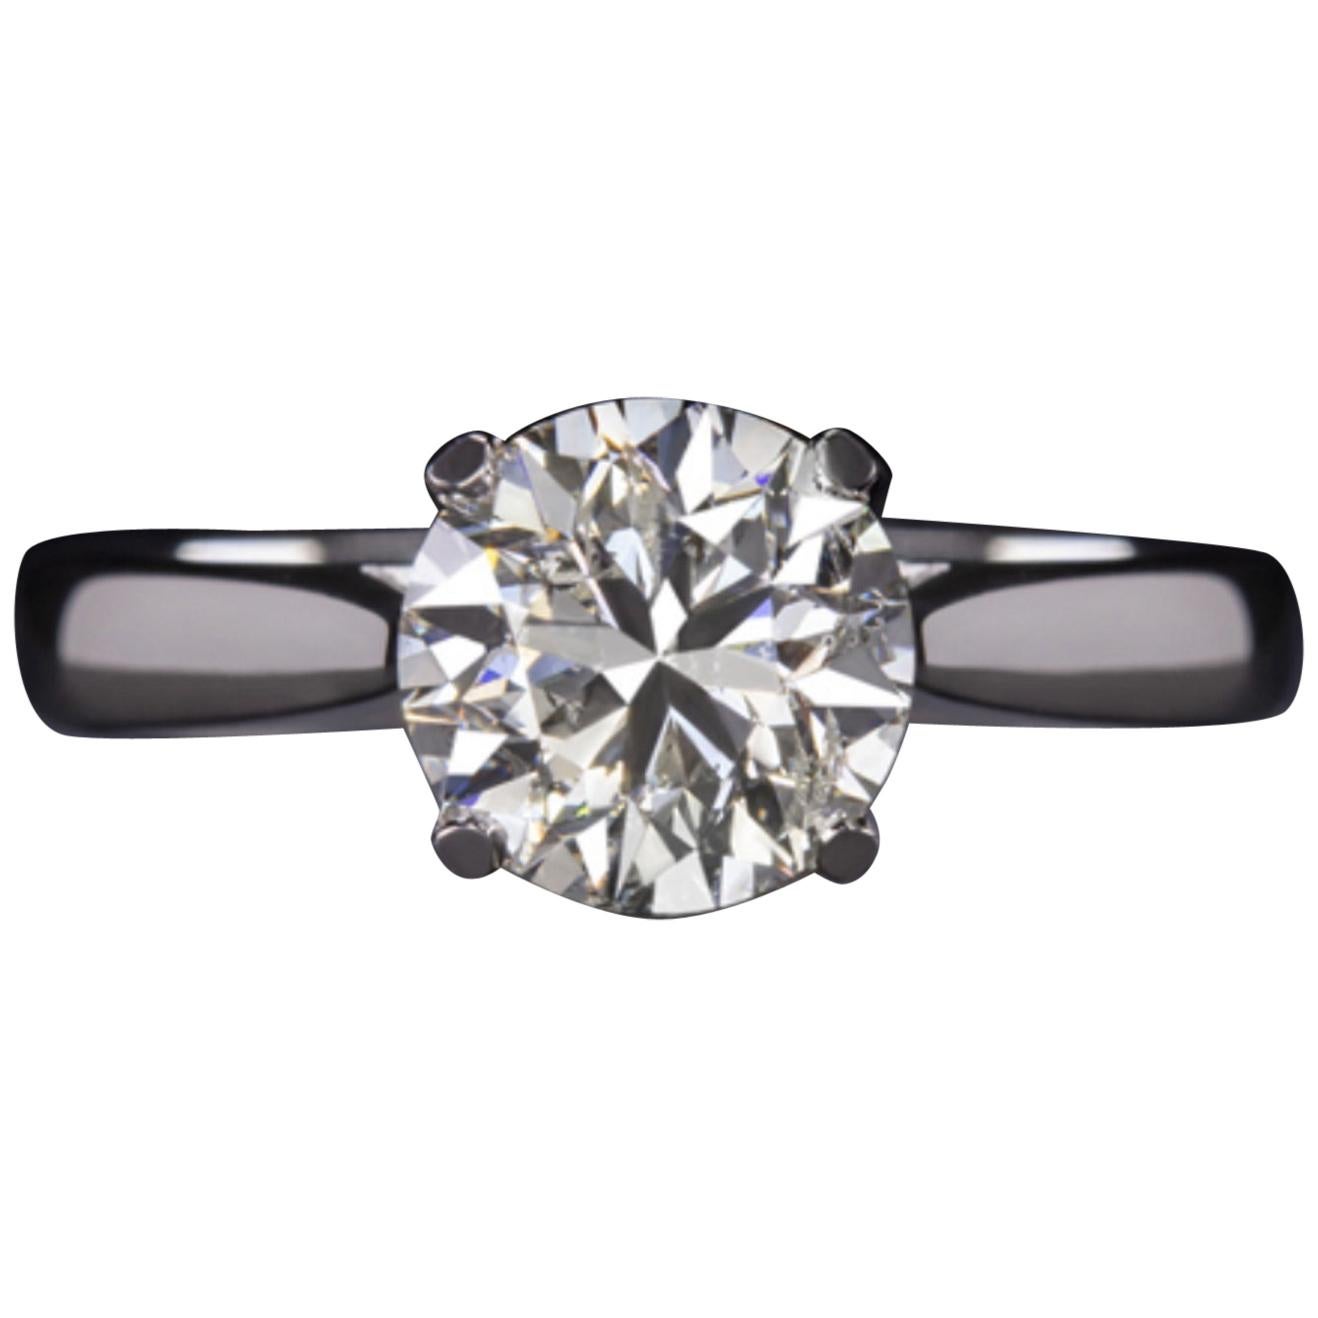 2 Carat Diamond Solitaire Platinum Ring